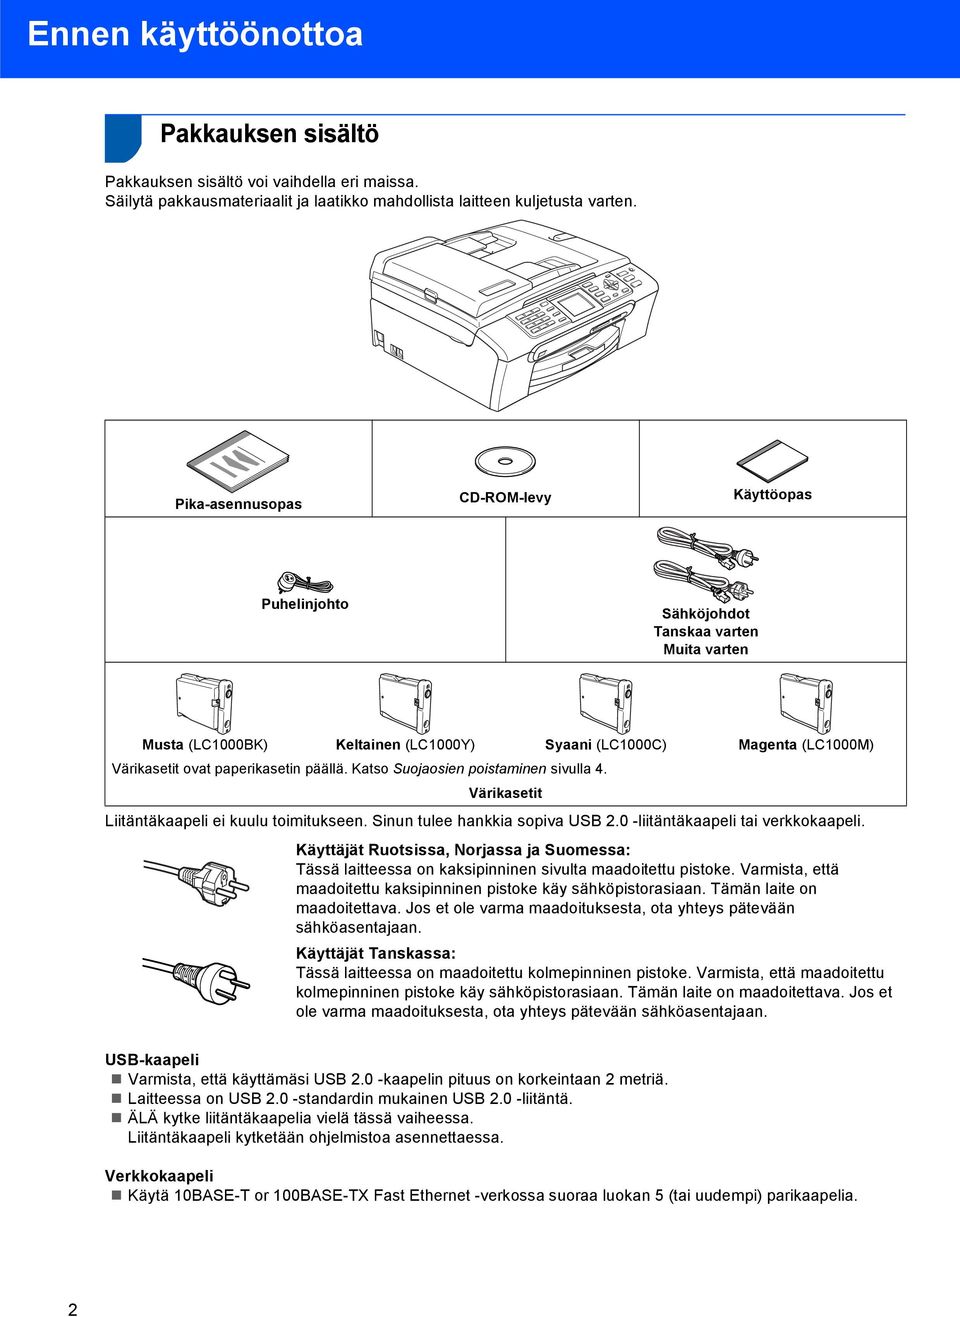 päällä. Katso Suojaosien poistaminen sivulla 4. Värikasetit Liitäntäkaapeli ei kuulu toimitukseen. Sinun tulee hankkia sopiva USB 2.0 -liitäntäkaapeli tai verkkokaapeli.